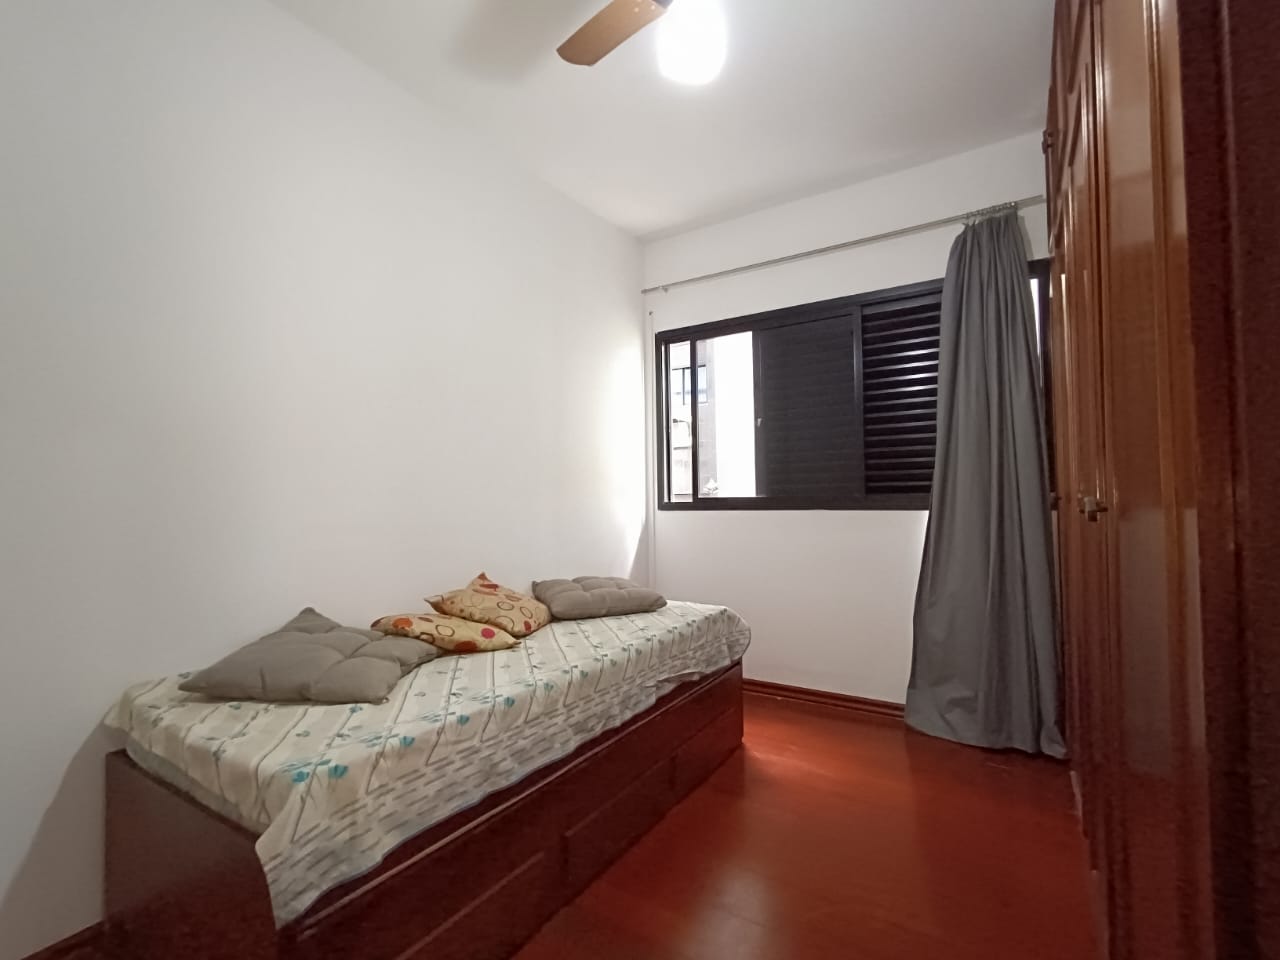 Foto do Imóvel - Lindo Apartamento 03 dorms na Ponta da Praia em Santos/SP